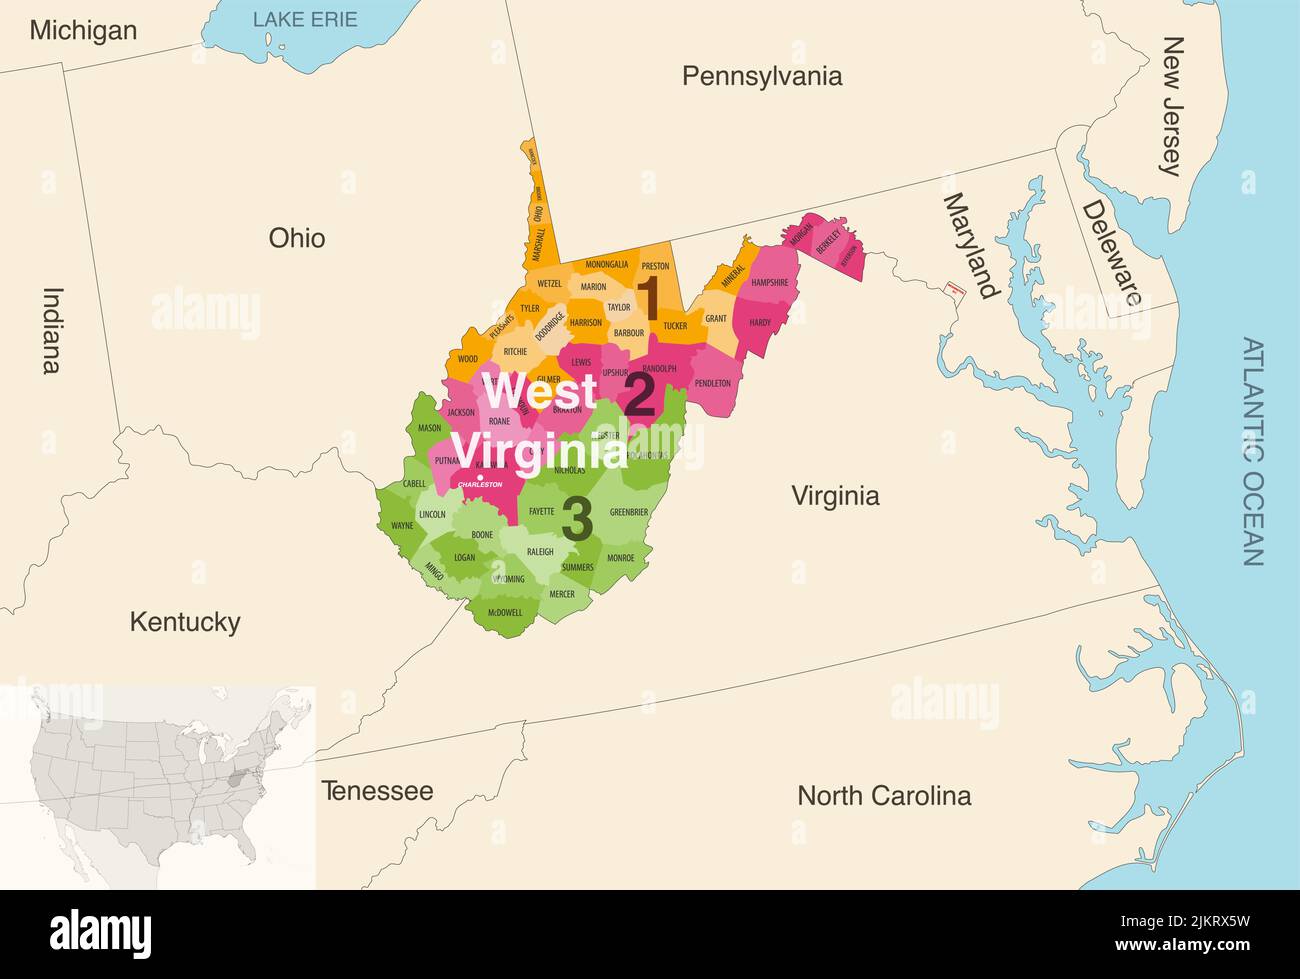 Le contee dello stato della Virginia occidentale sono colorate da una mappa vettoriale dei distretti del Congresso con gli stati vicini e le terrotorie Illustrazione Vettoriale